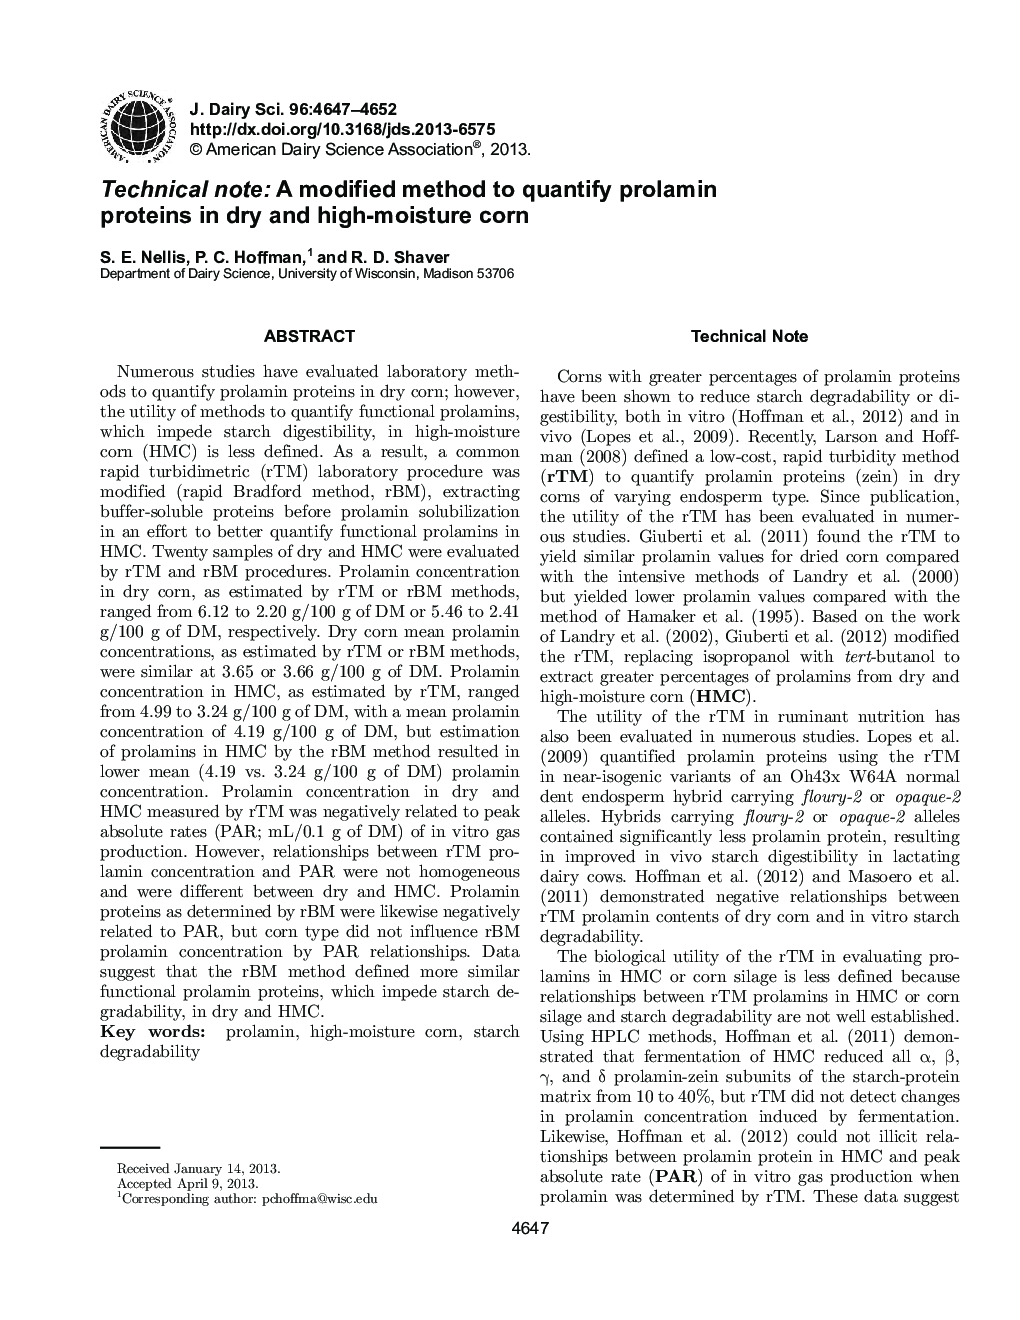 نکته فنی: روش اصلاح شده برای تعیین پروتئین پرولامین در ذرت خشک و رطوبت 